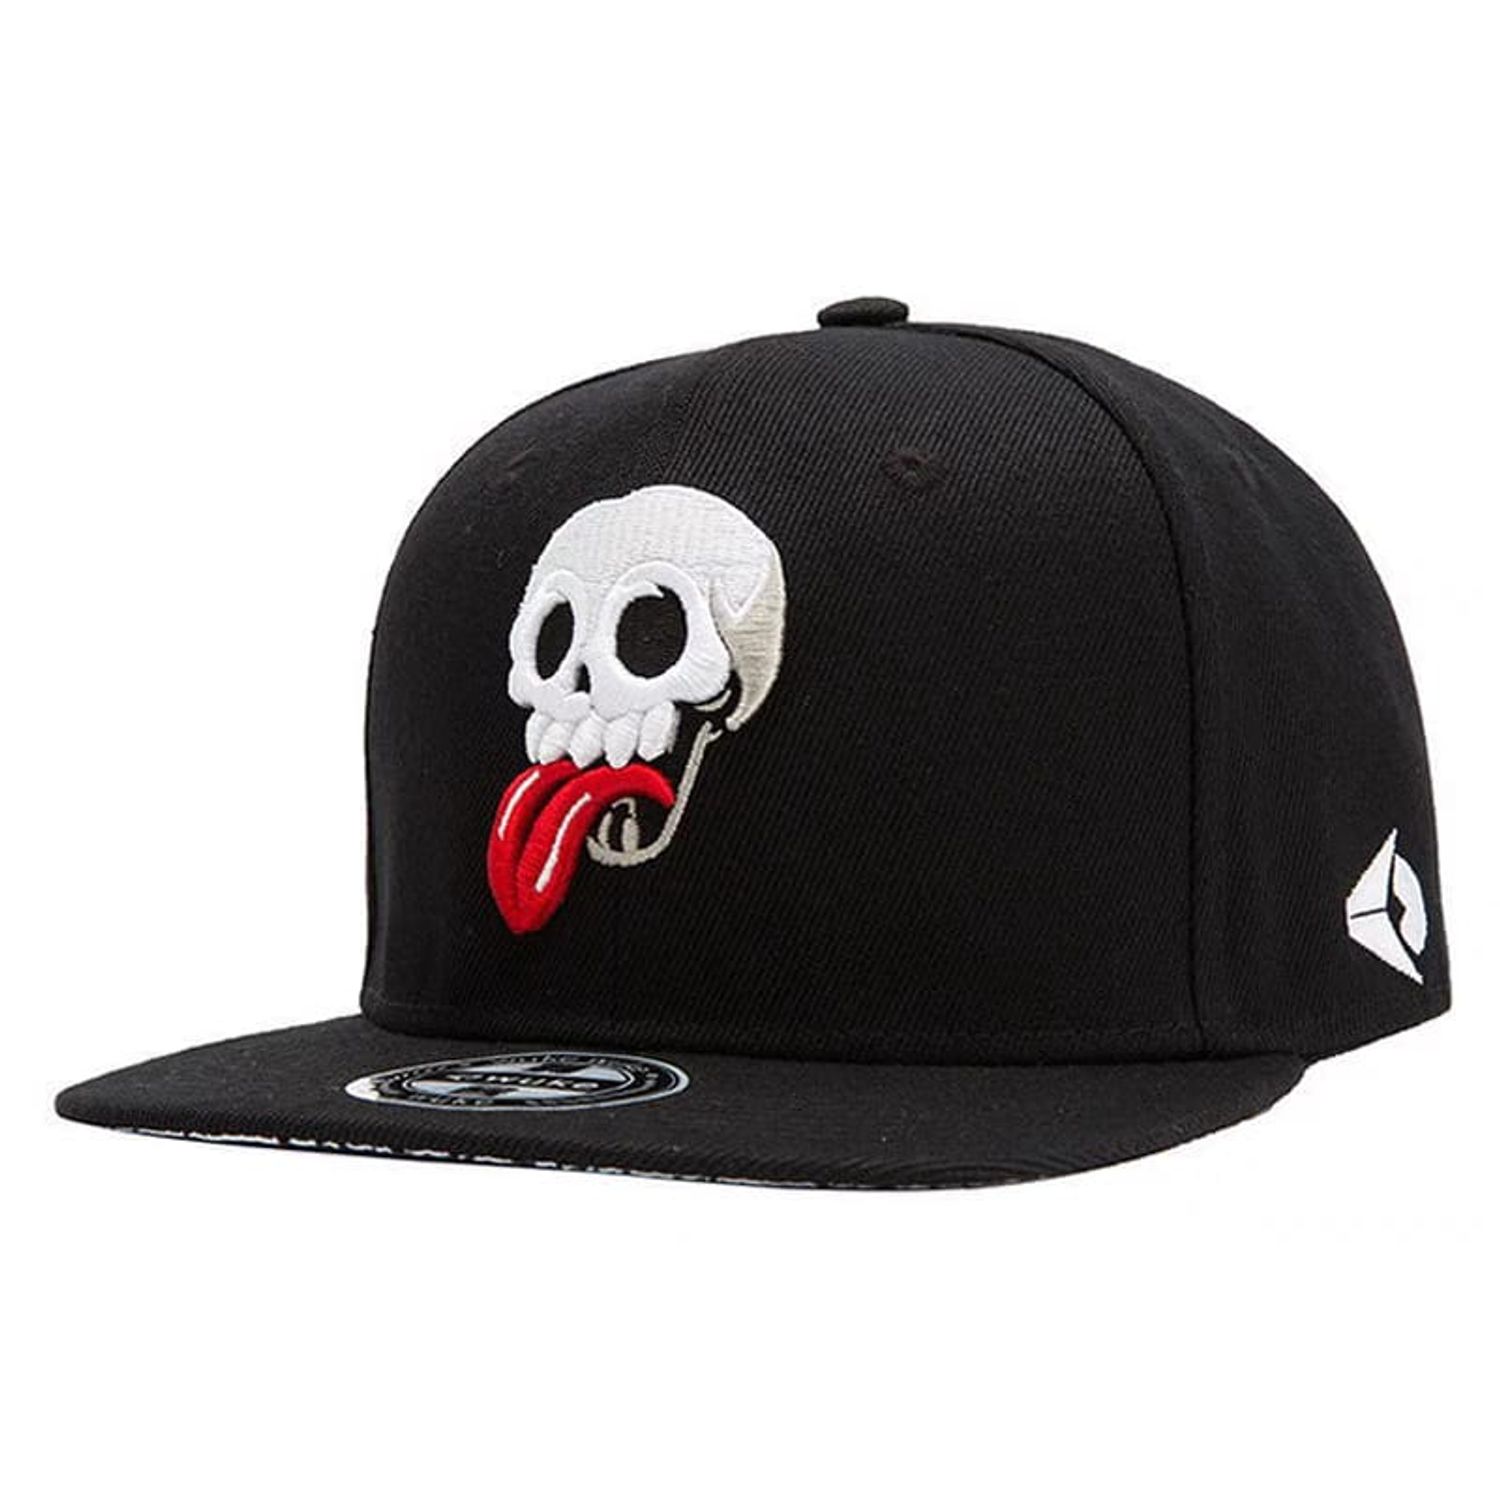 MonsterZ | CAPS & HATS